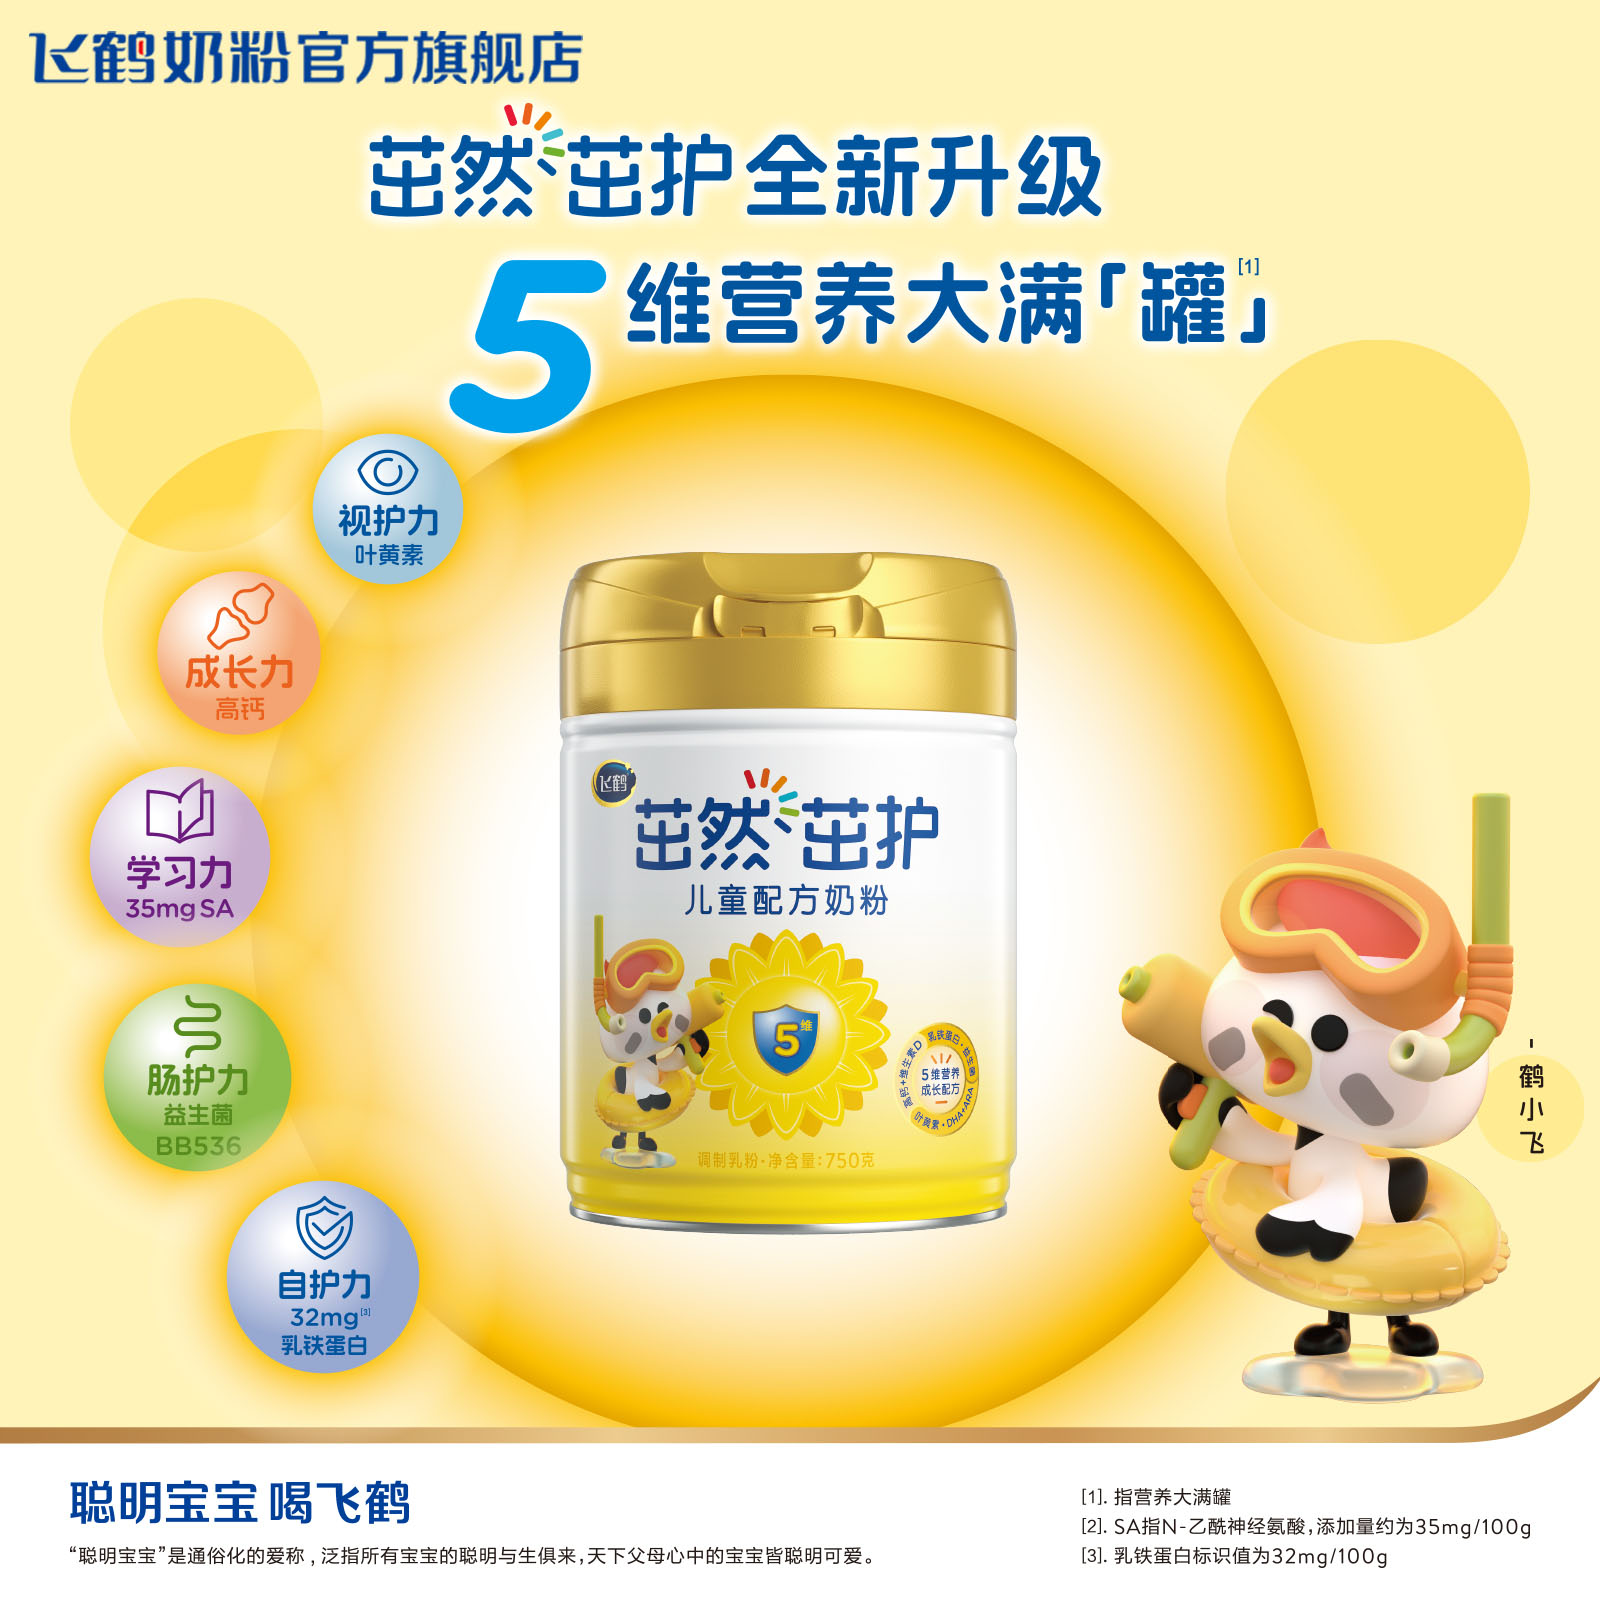 【品牌新享】飞鹤茁然茁护4段儿童配方牛奶粉750g*1罐